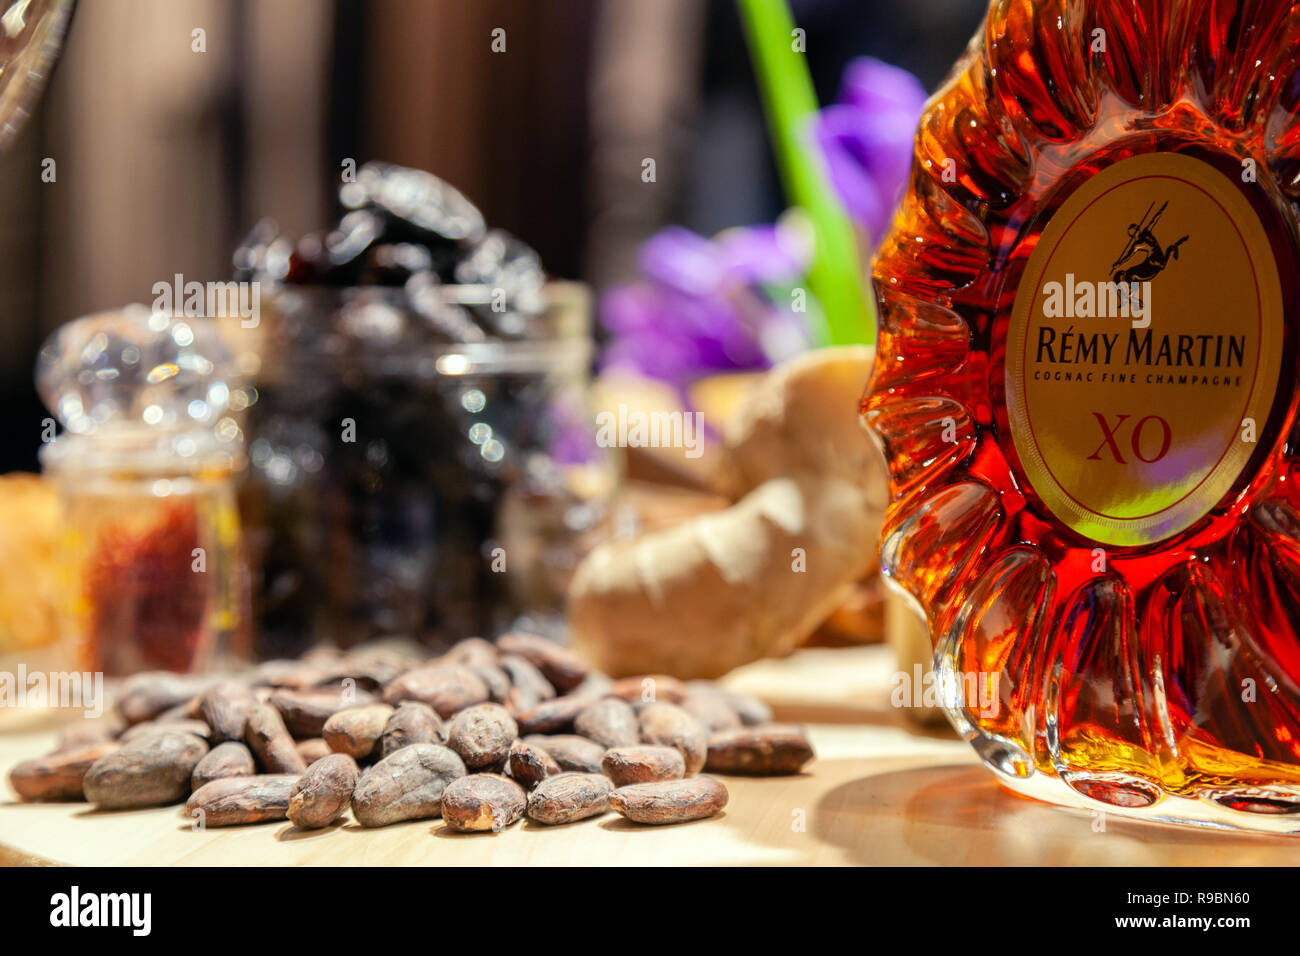 Russland Kemerovo 16-11-2018 Buffet Degustation mit Muttern, Snacks, closeup Luxus Cognac im Crystal Flasche Remy Martin XO und Glas zu öffnen cl Stockfoto